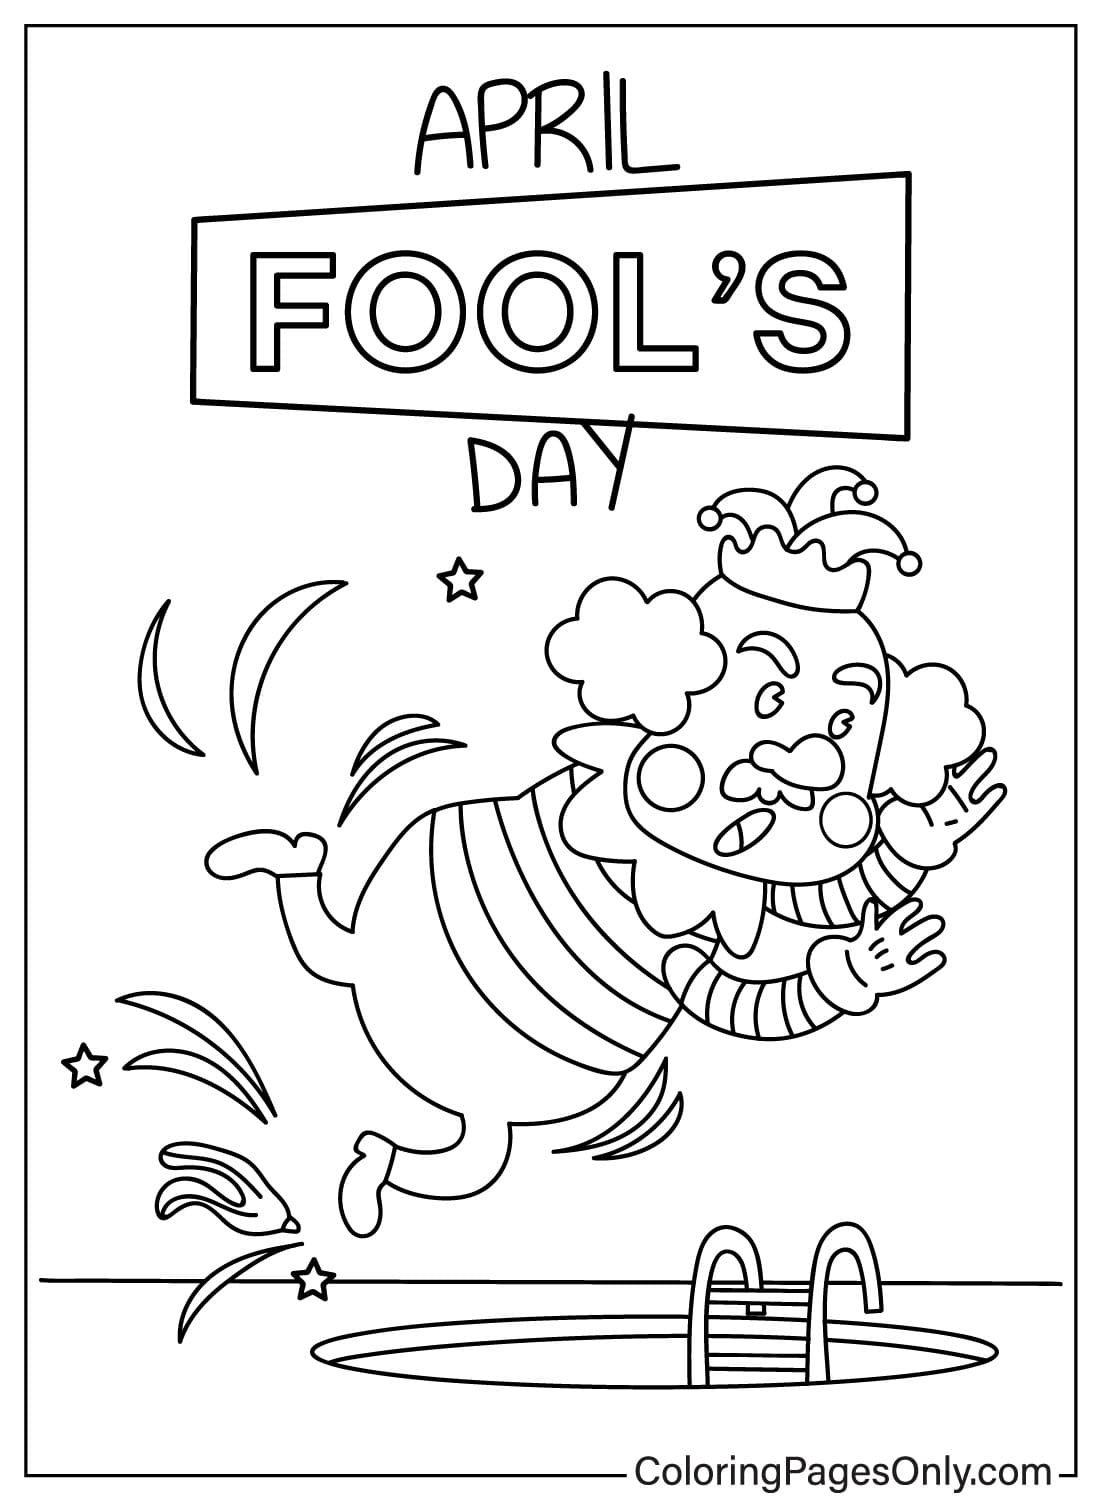 Afbeeldingen April Fool's Day kleurplaat van April Fool's Day